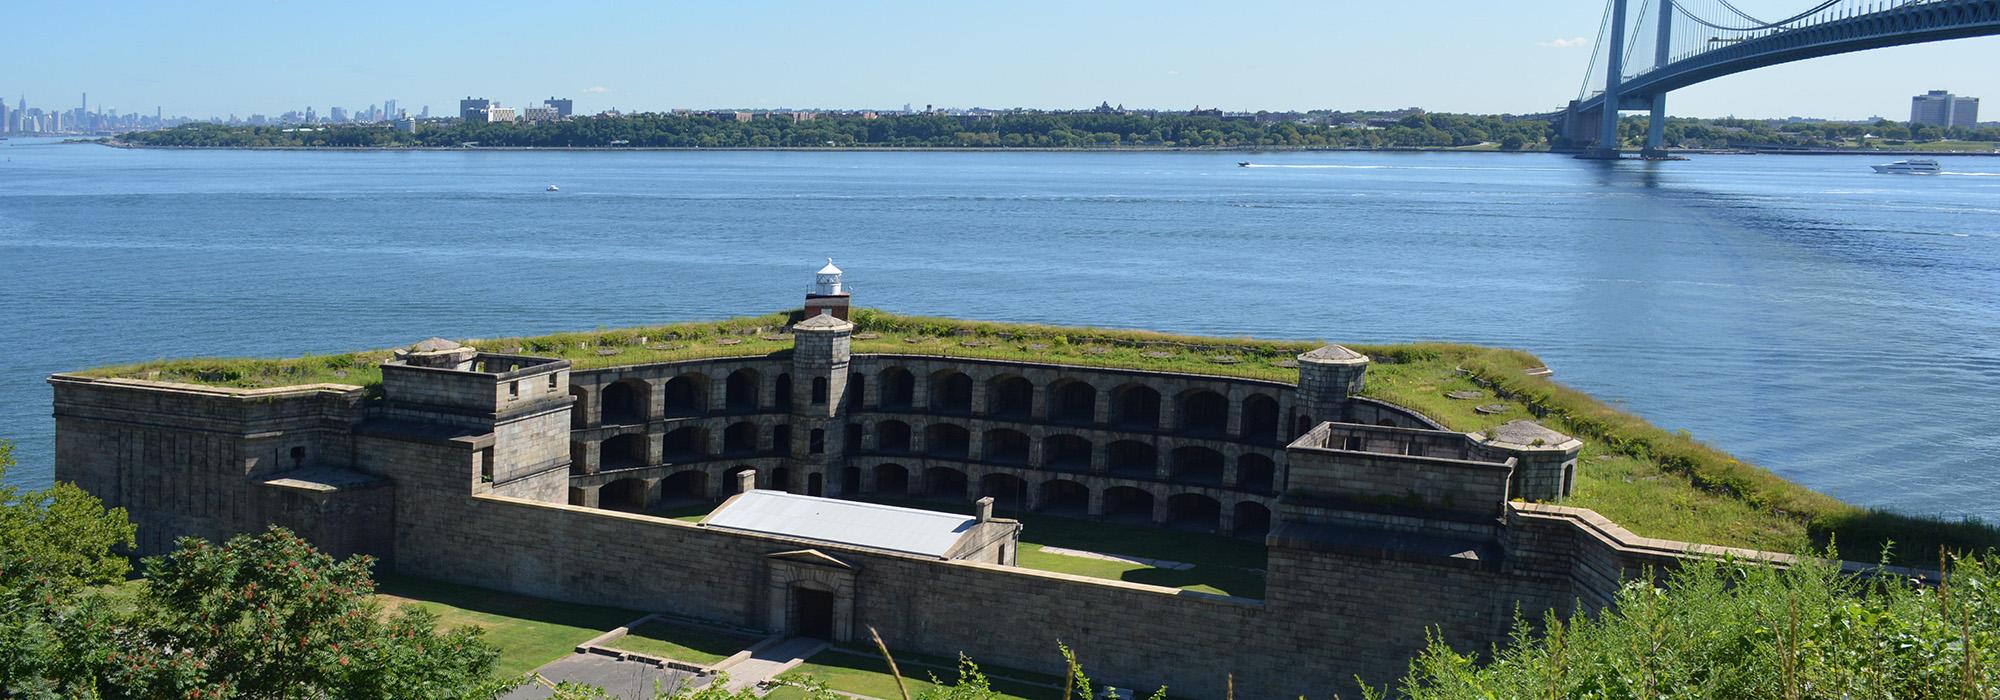 Fort Wadsworth, New York, NY